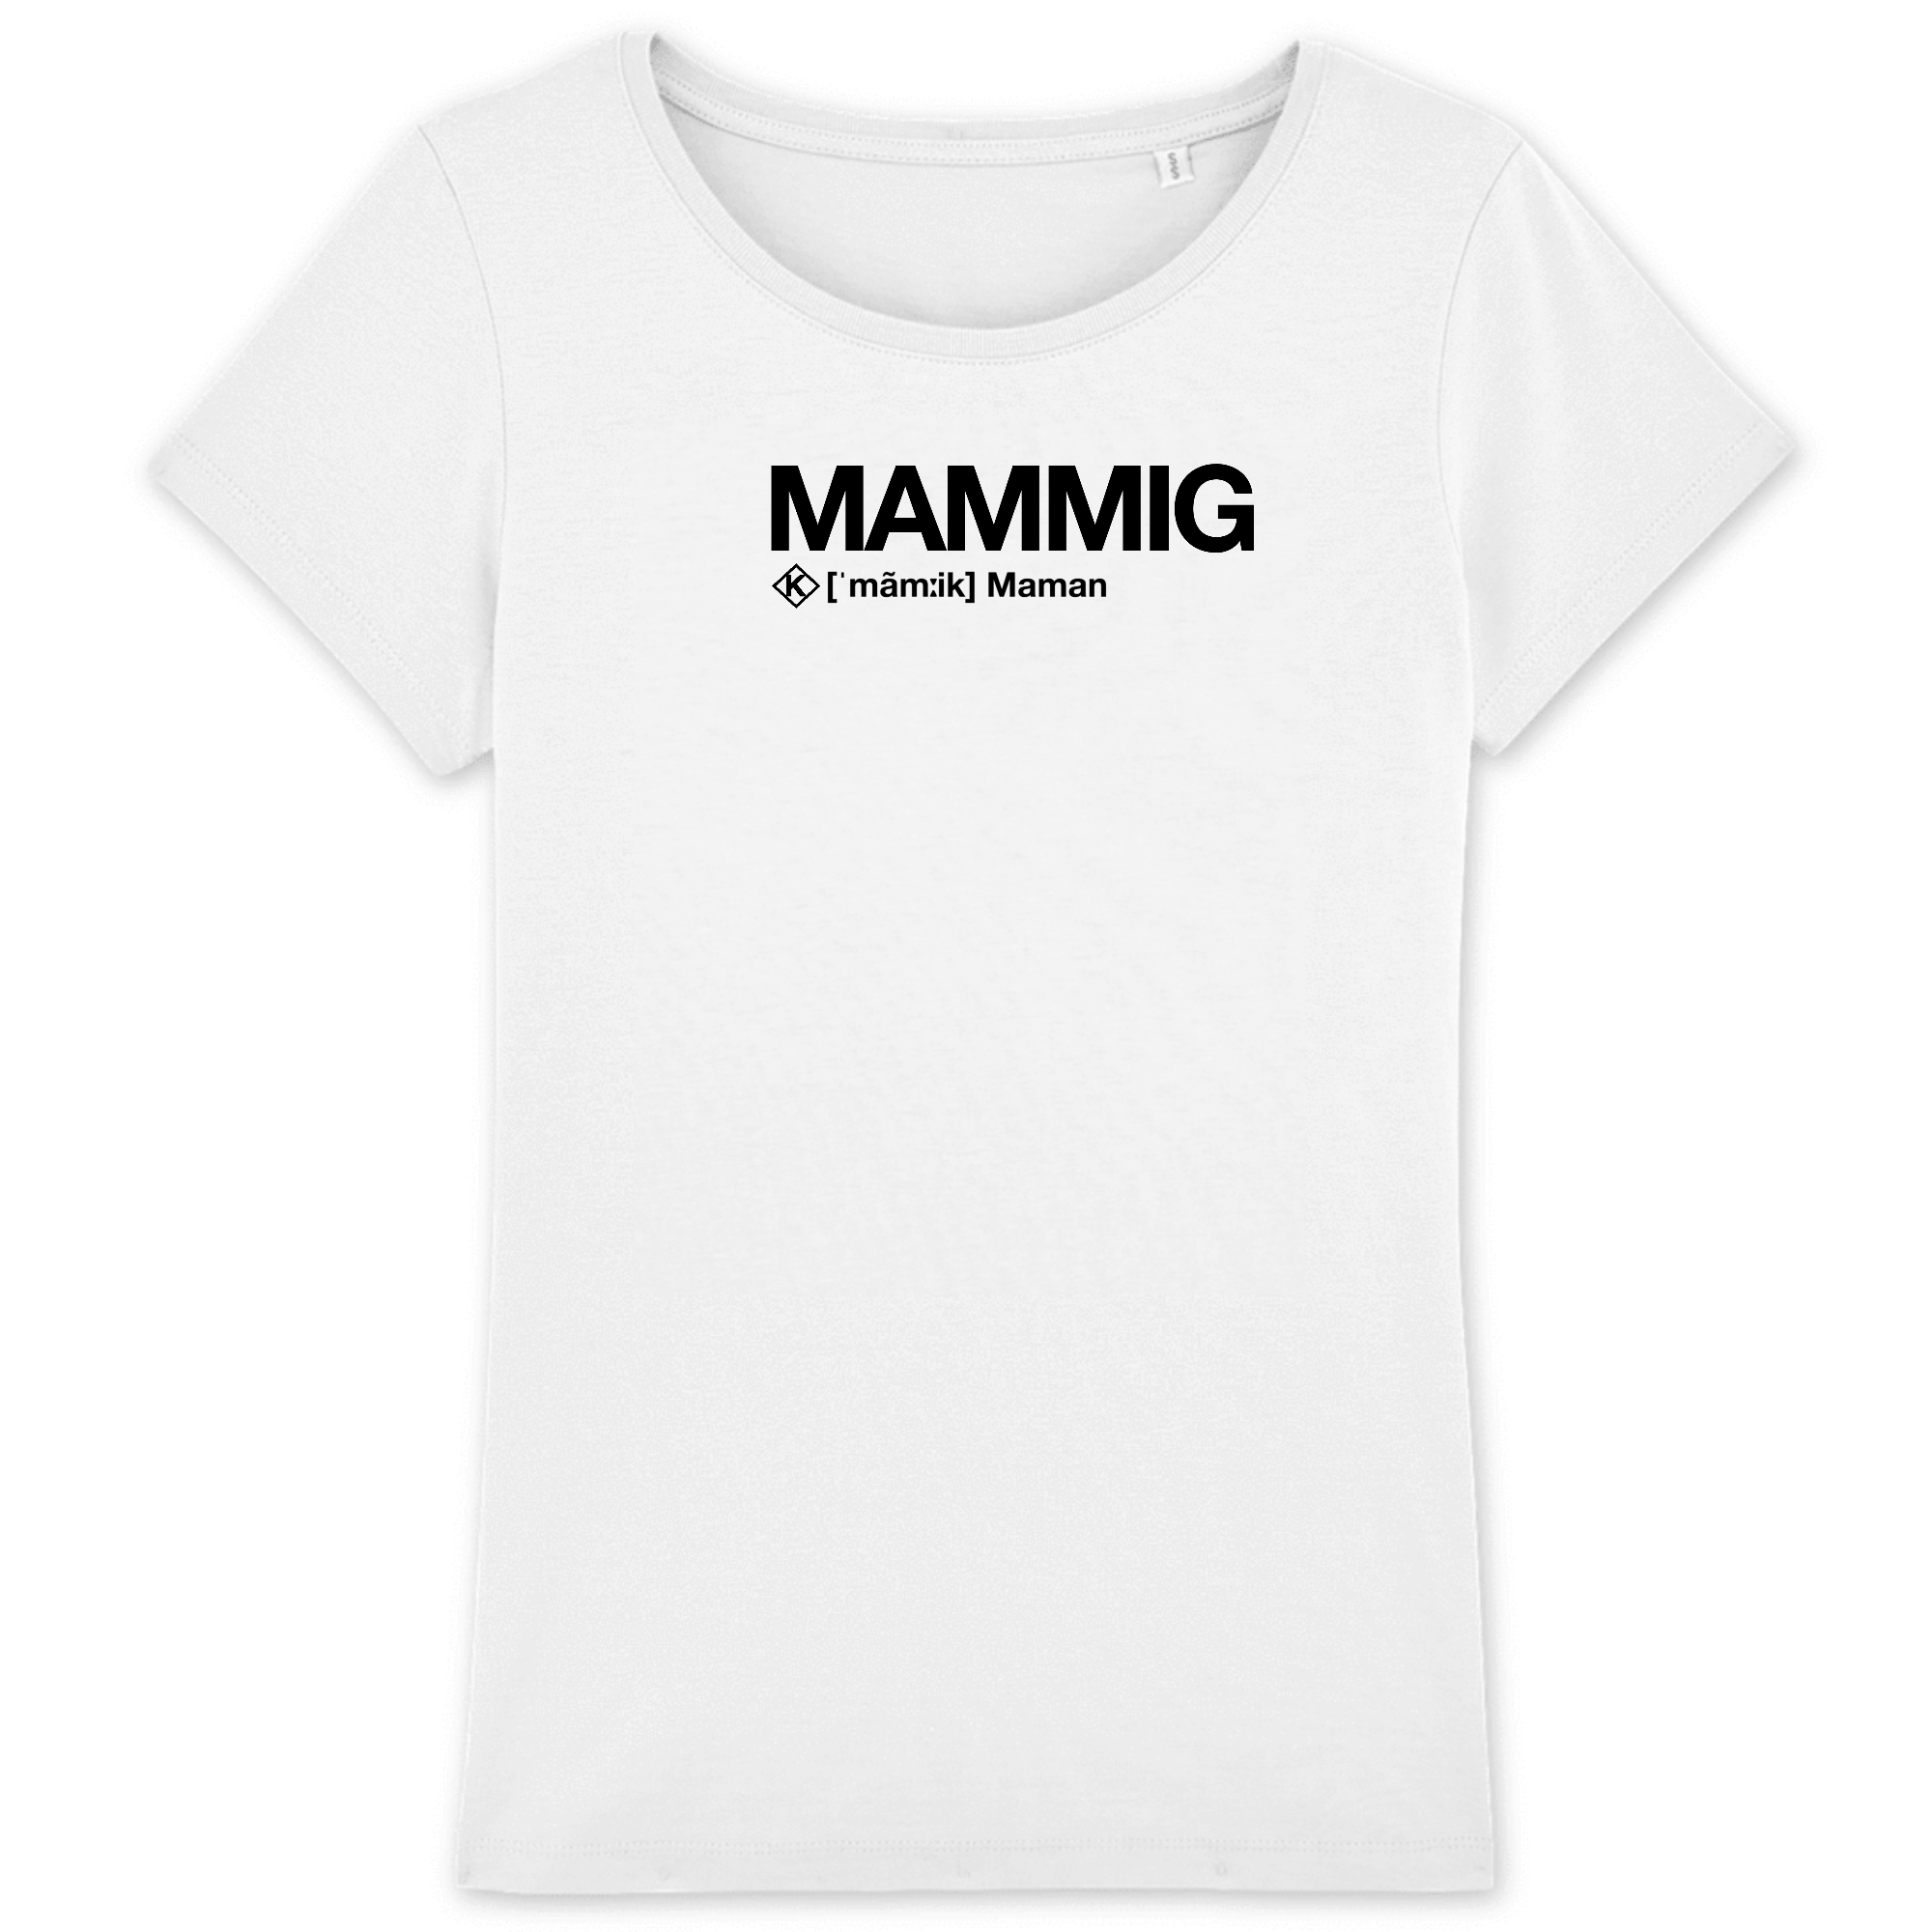 Mammig T-shirt (Maman) - noir